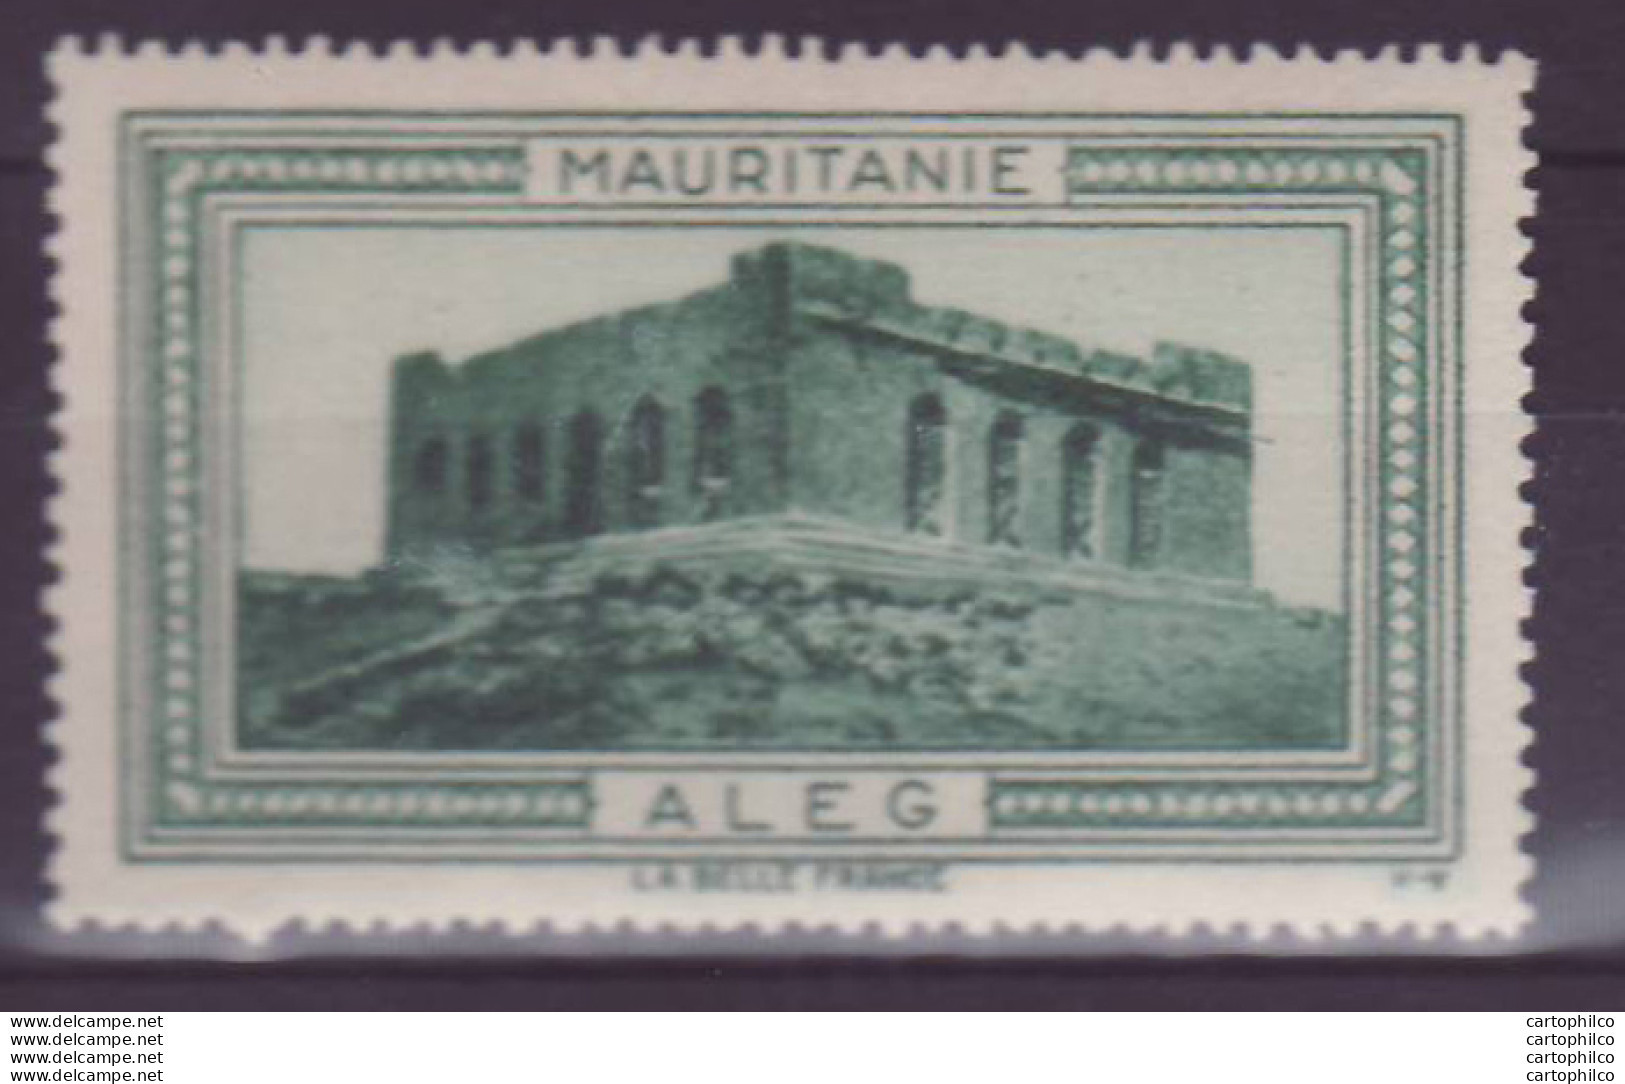 Vignette ** Mauritanie Aleg - Unused Stamps